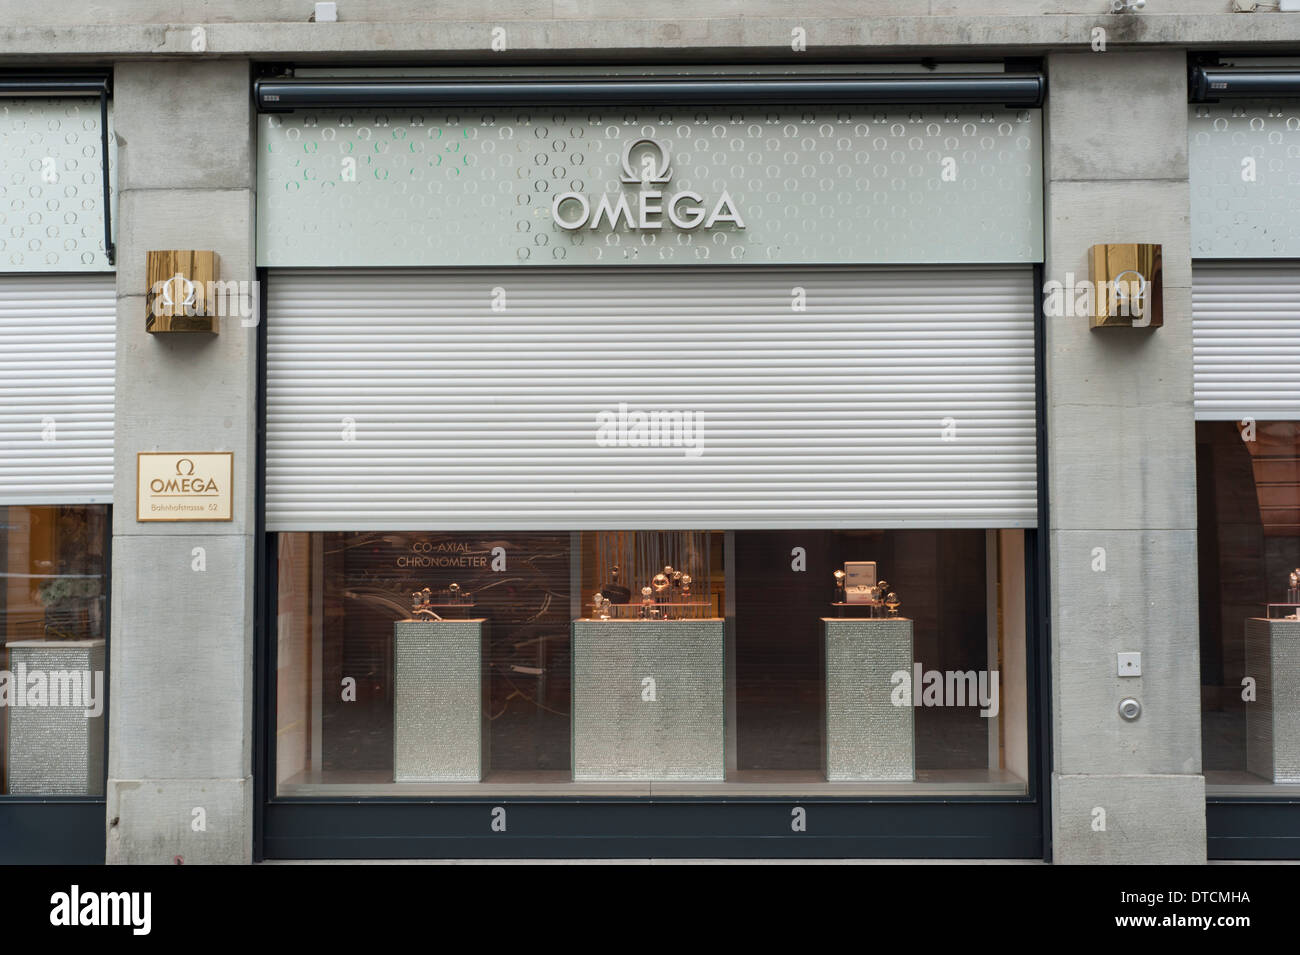 Demi fermée stores à rouleau sur un magasin de montres de luxe Omega dans le quartier commerçant de Zurich Bahnhofstrasse Banque D'Images